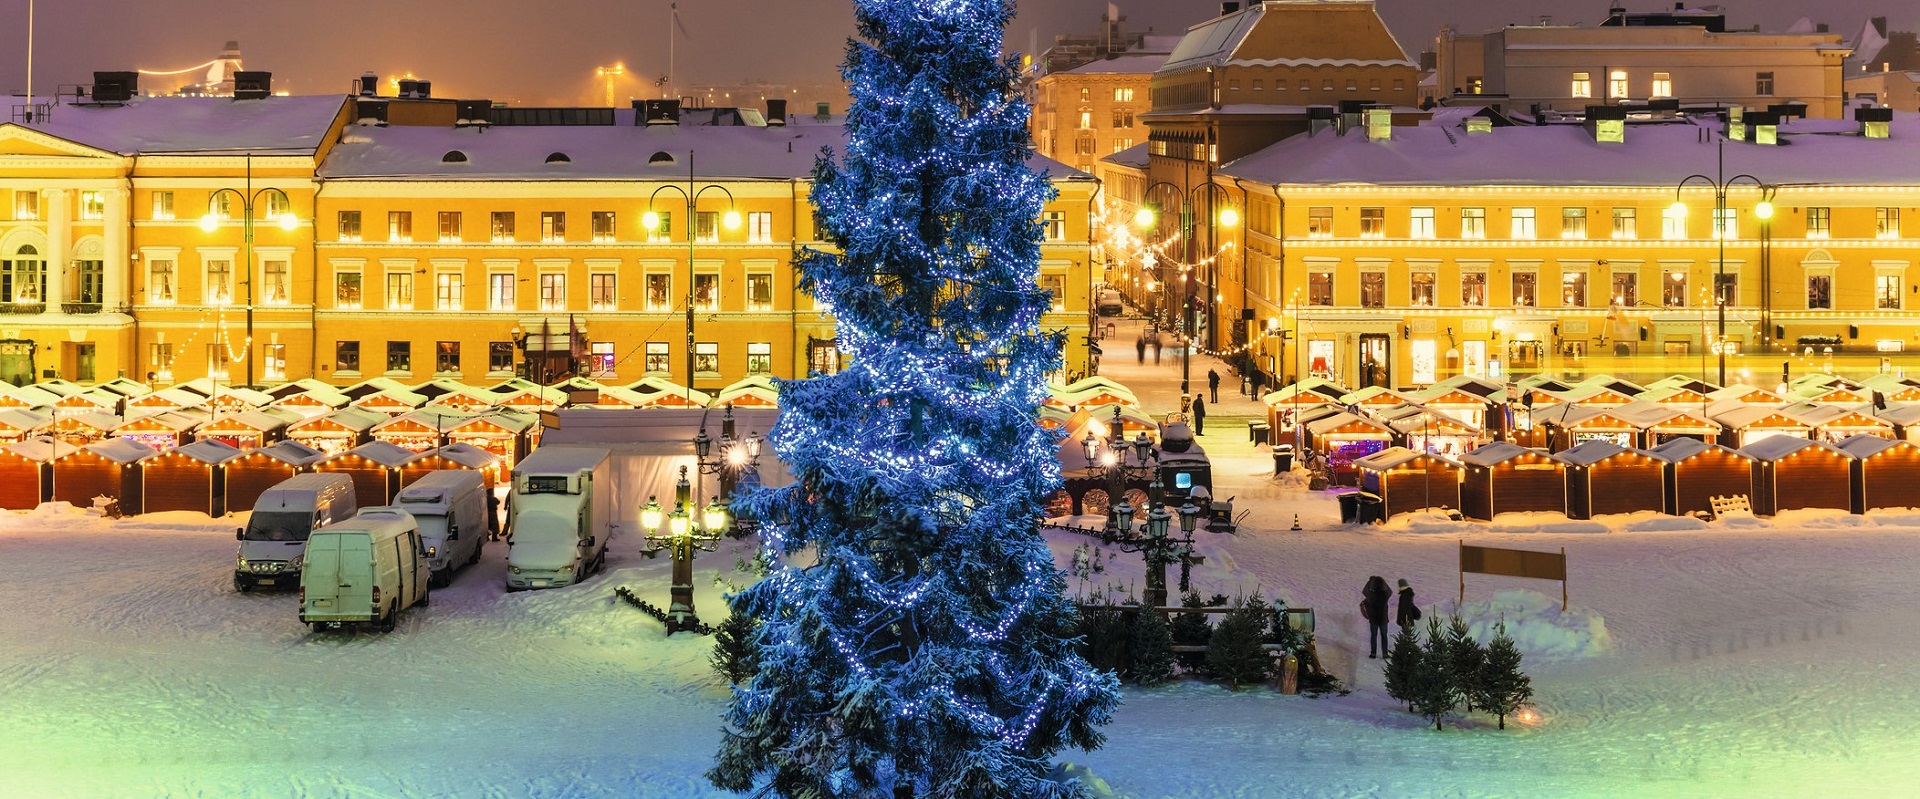 Christmas in Helsinki, Finland.